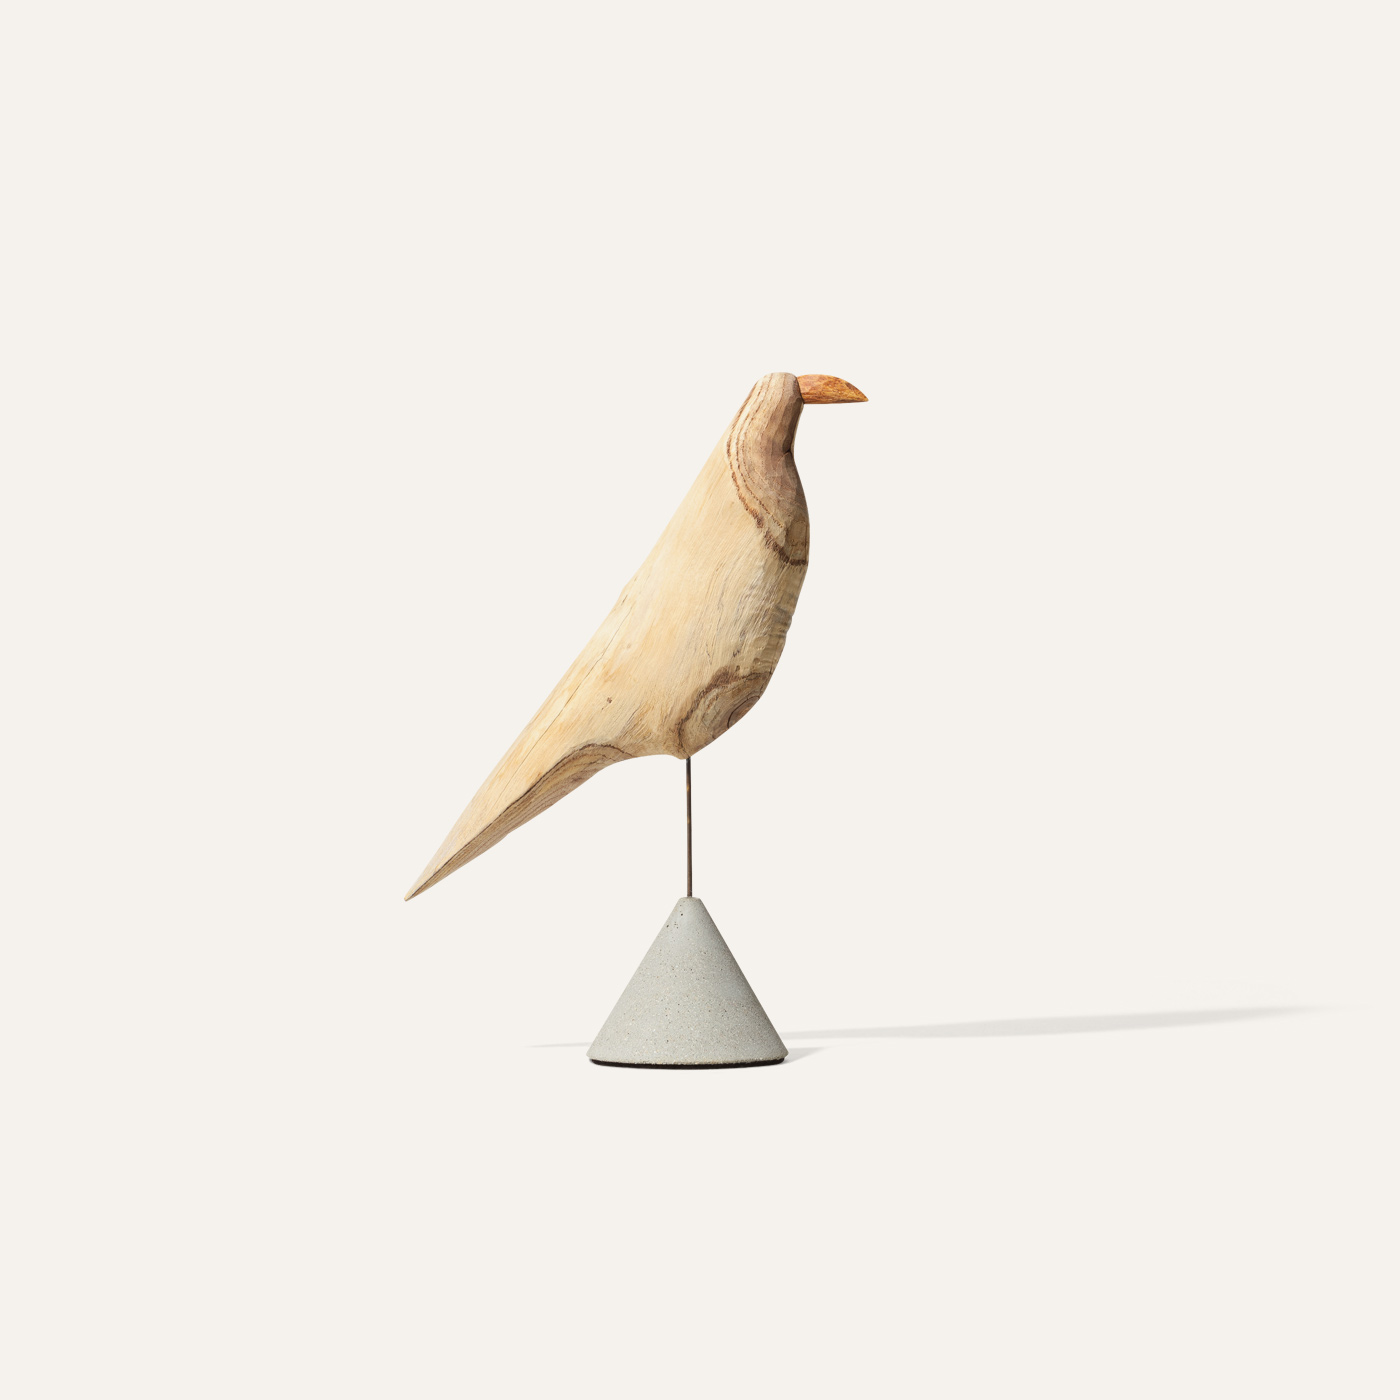 wooden bird object